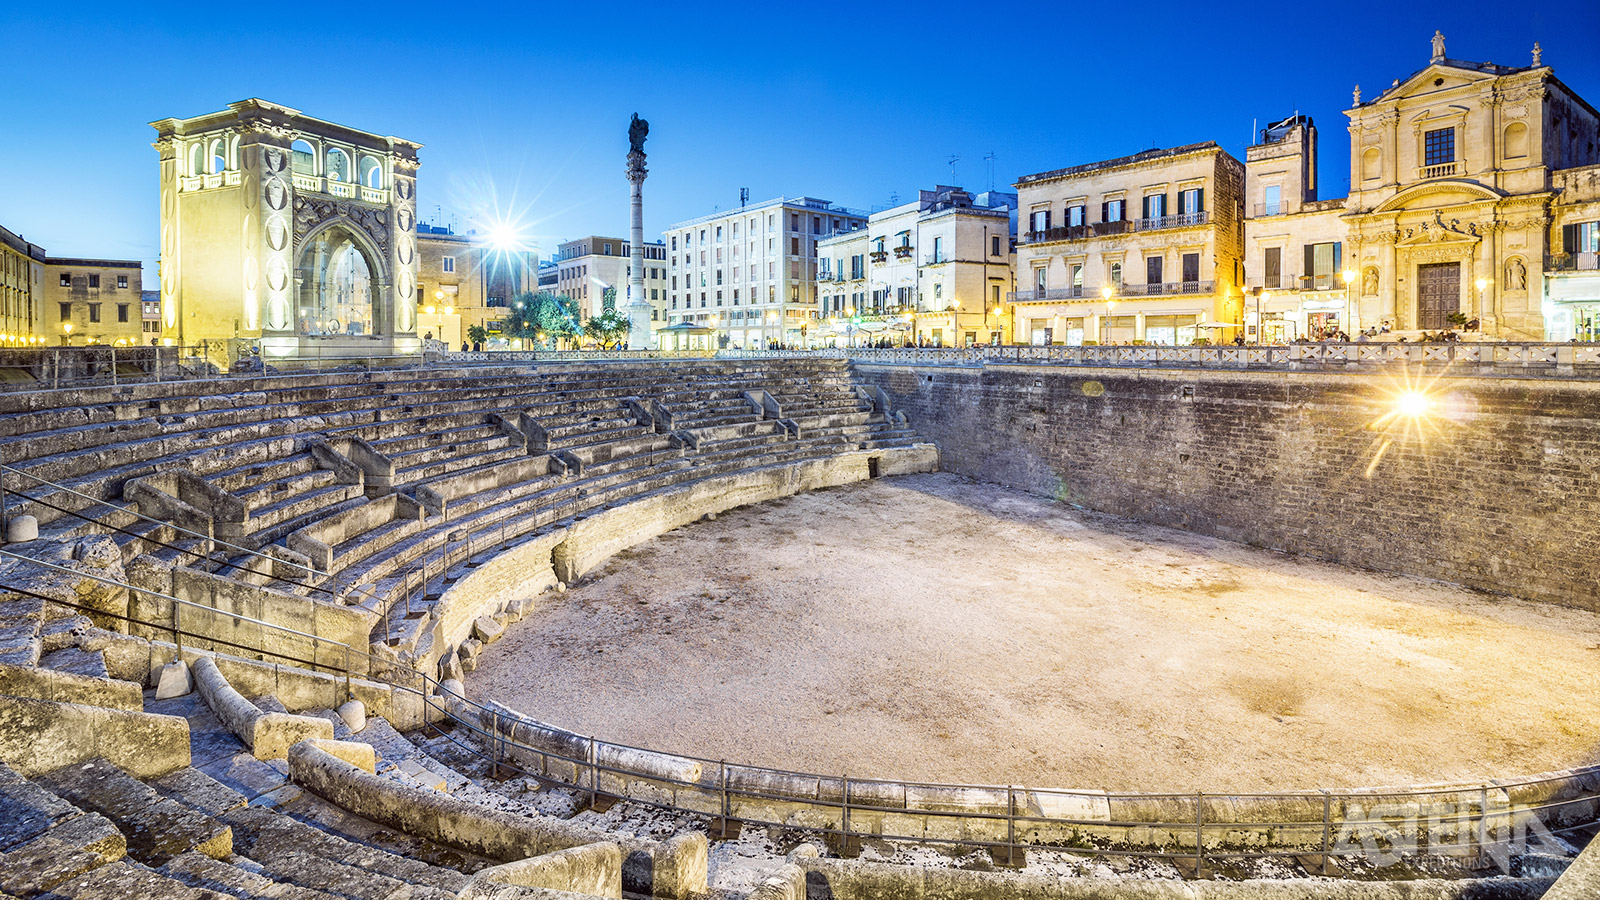 In Lecce wandel je langs Piazza Sant’Oronzo met zijn amfitheater